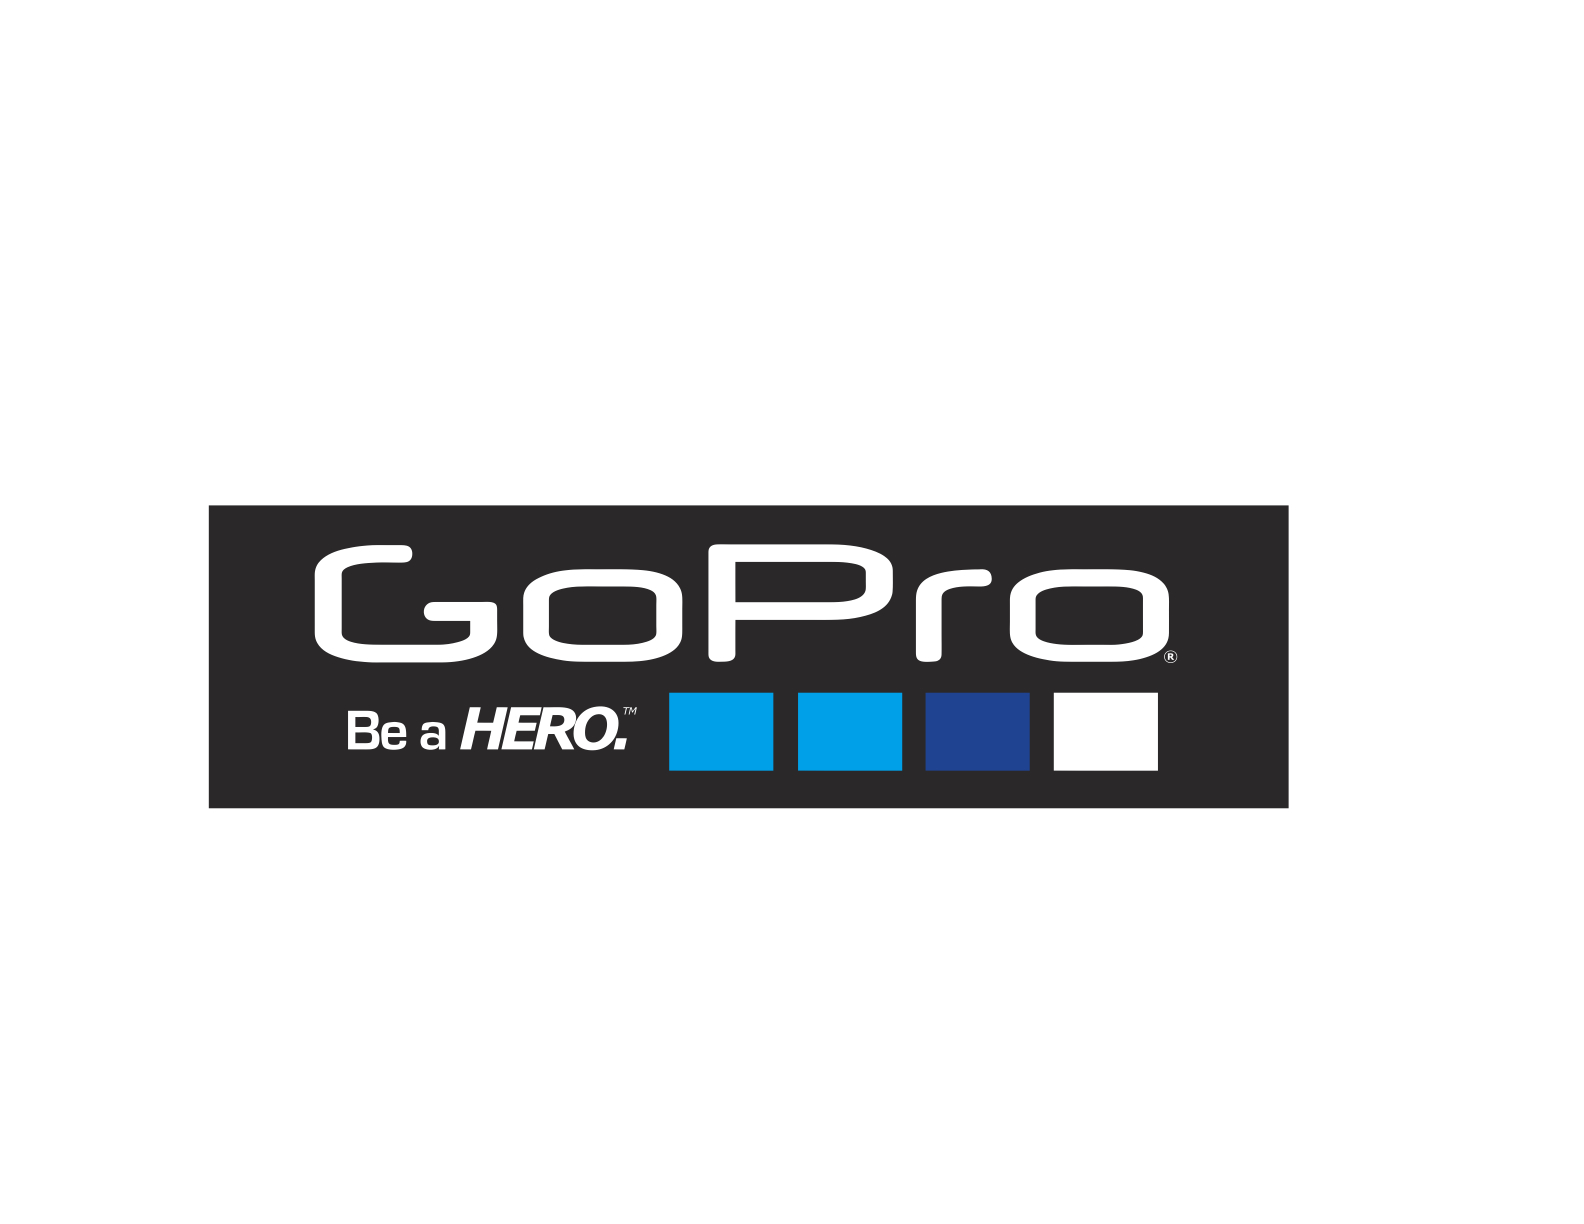 Gopro Logos